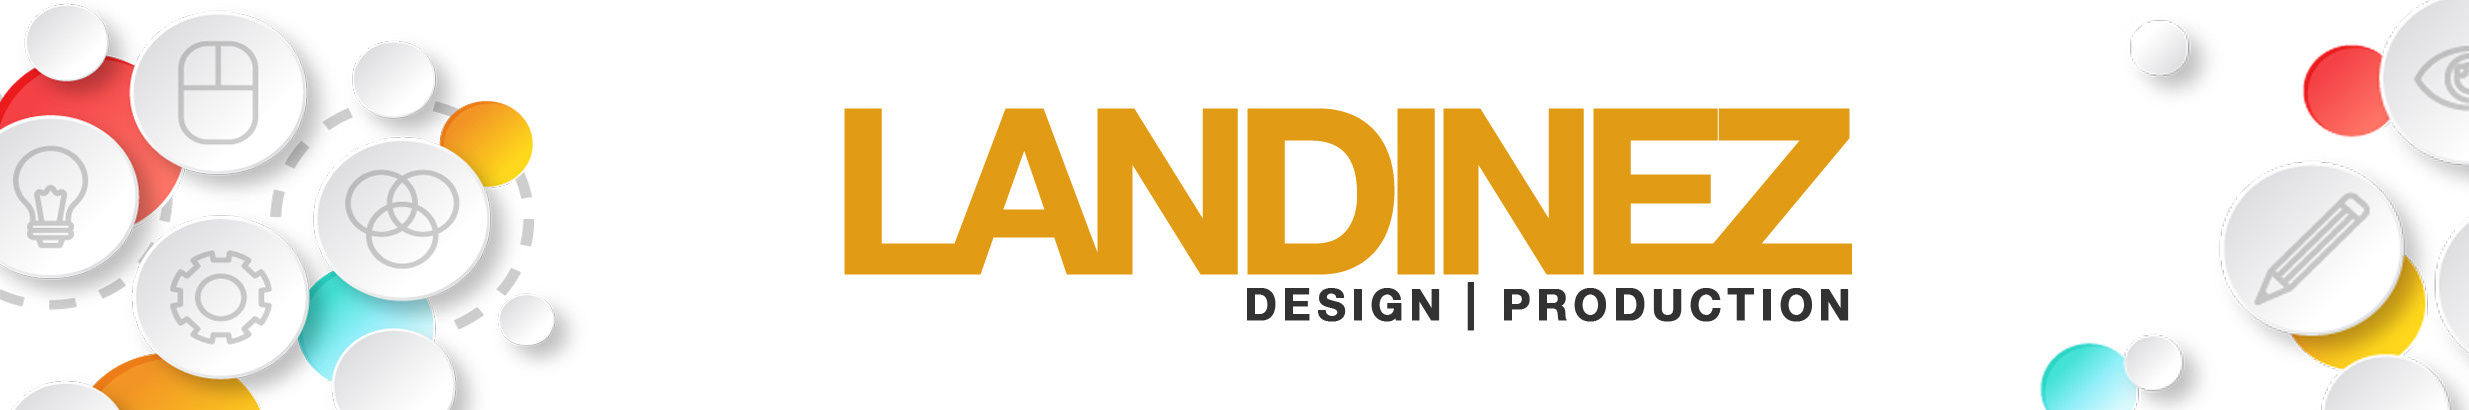 Banner de perfil de LANDINEZ DESIGN PRODUCTION